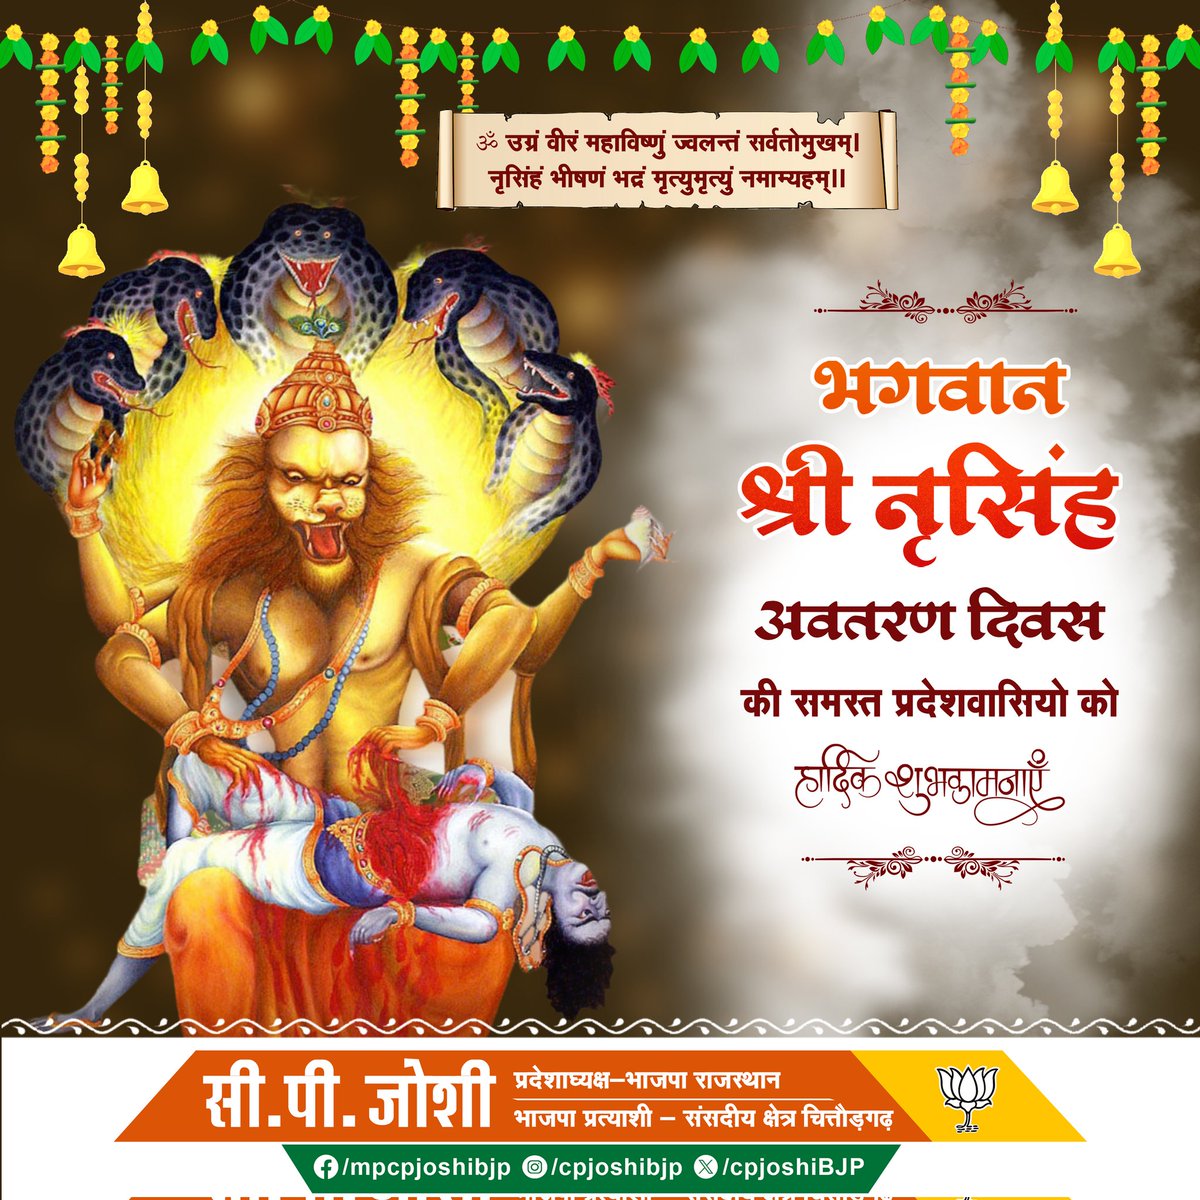 भगवान श्री नृसिंह अवतरण दिवस की समस्त प्रदेशवासियों को हार्दिक शुभकामनाएं।